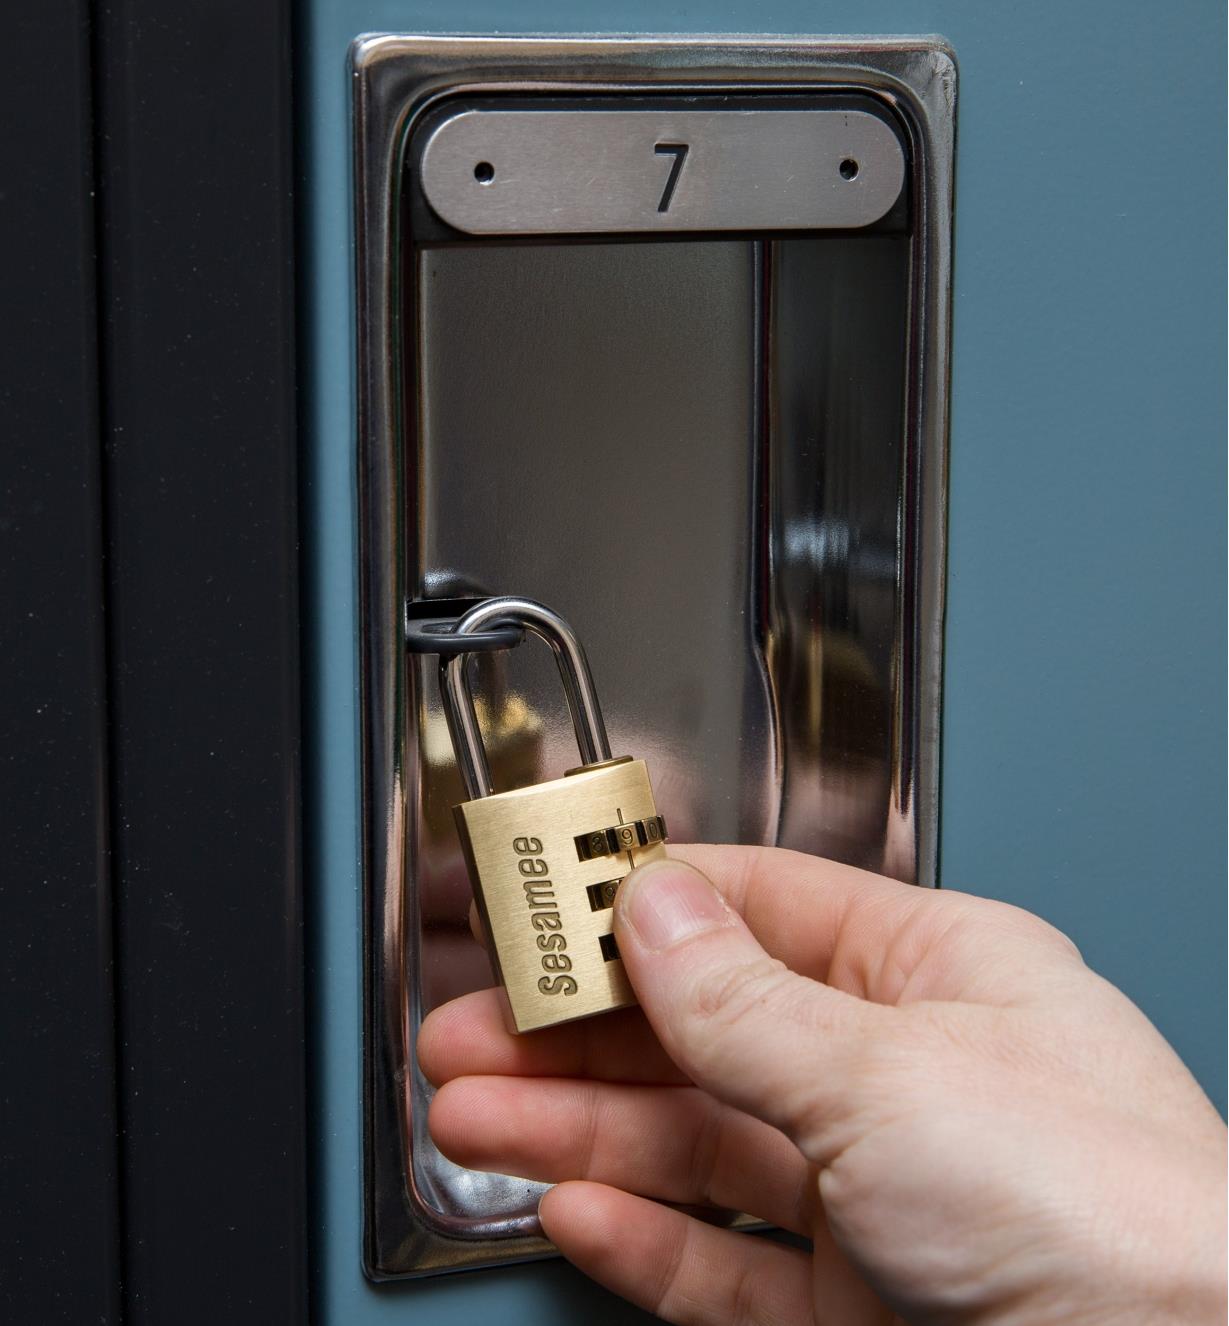 Locker door secured with a 2 9/16" x 1 3/16" padlock